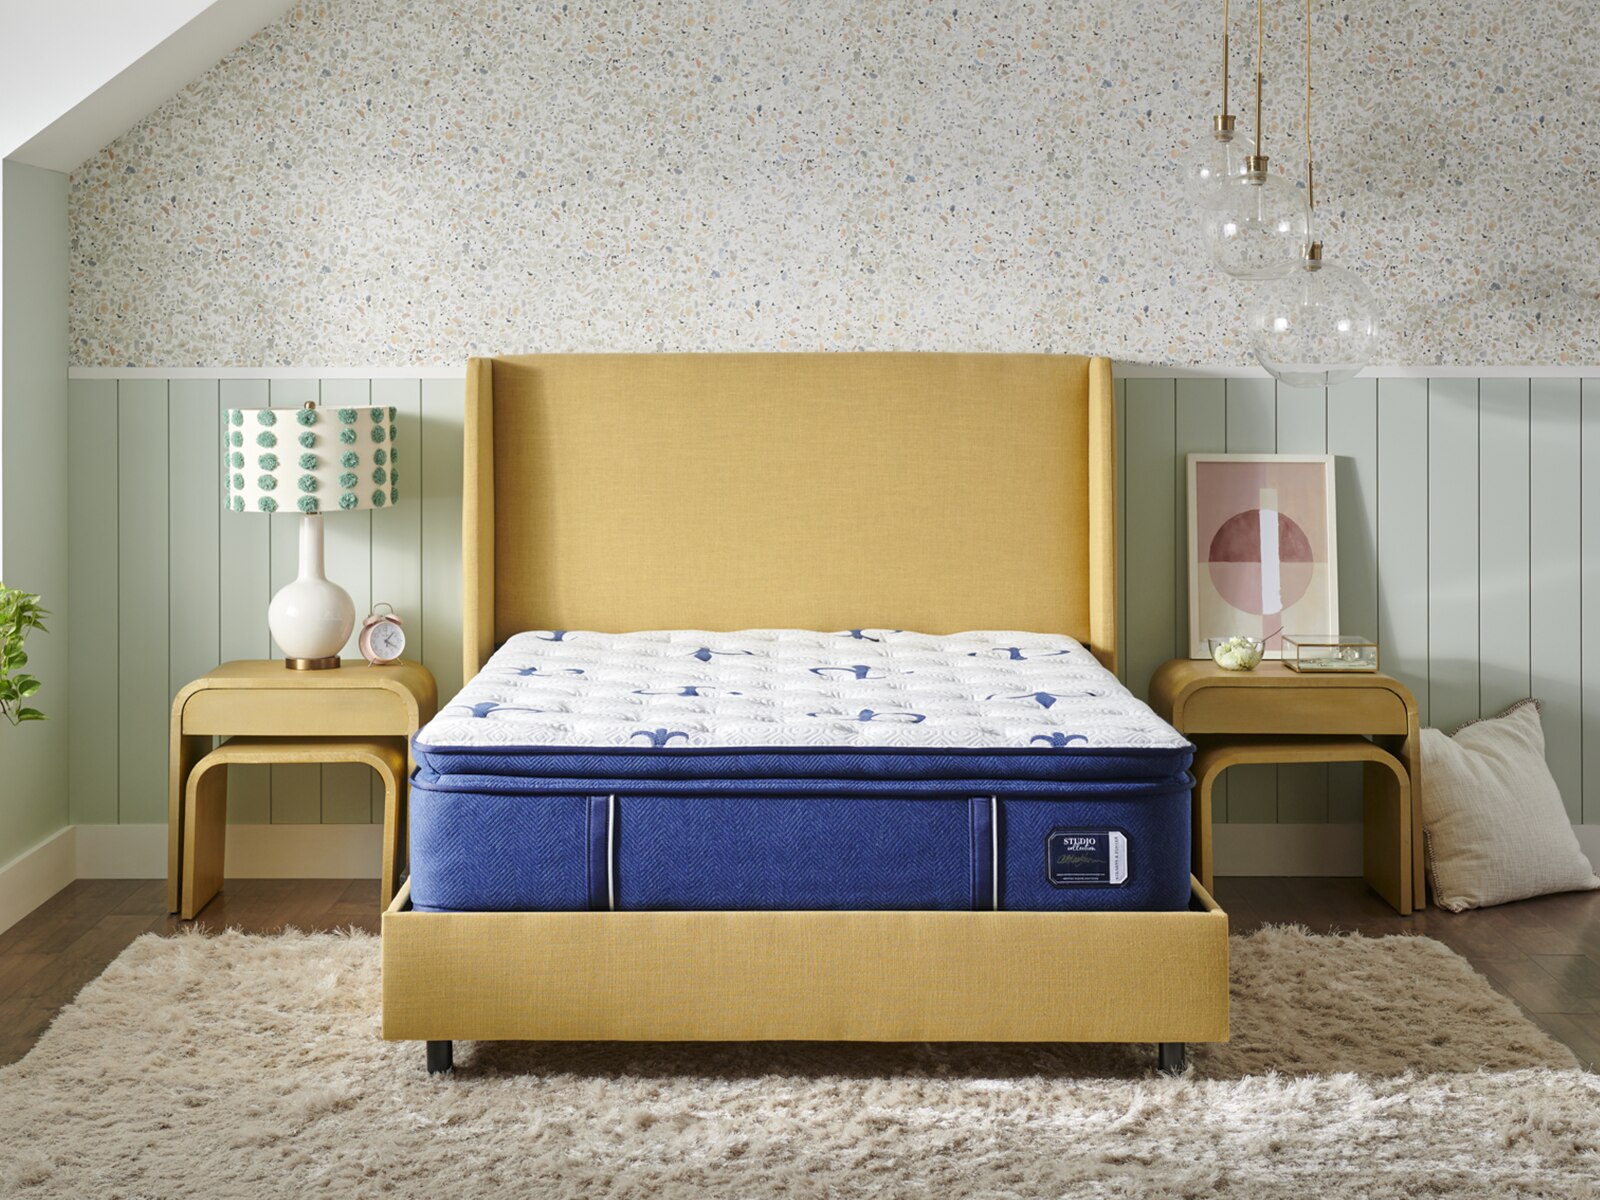 stearns & foster studio medium euro pillow top mattress